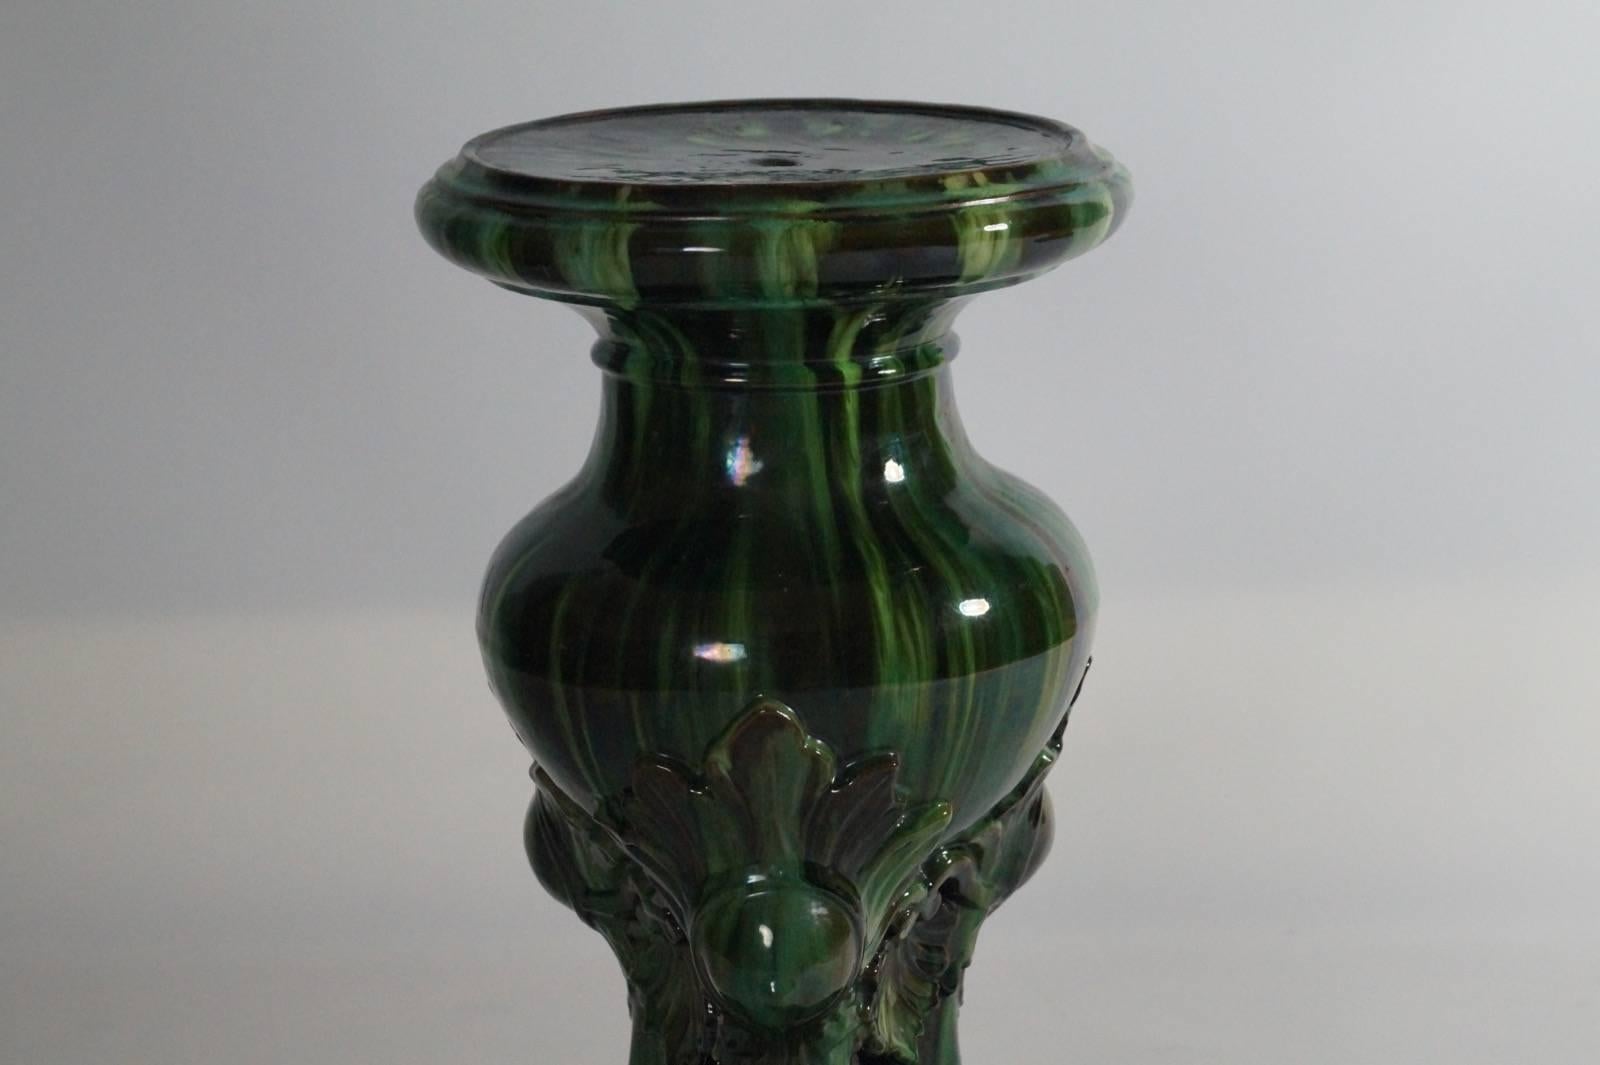 pedestals for vases